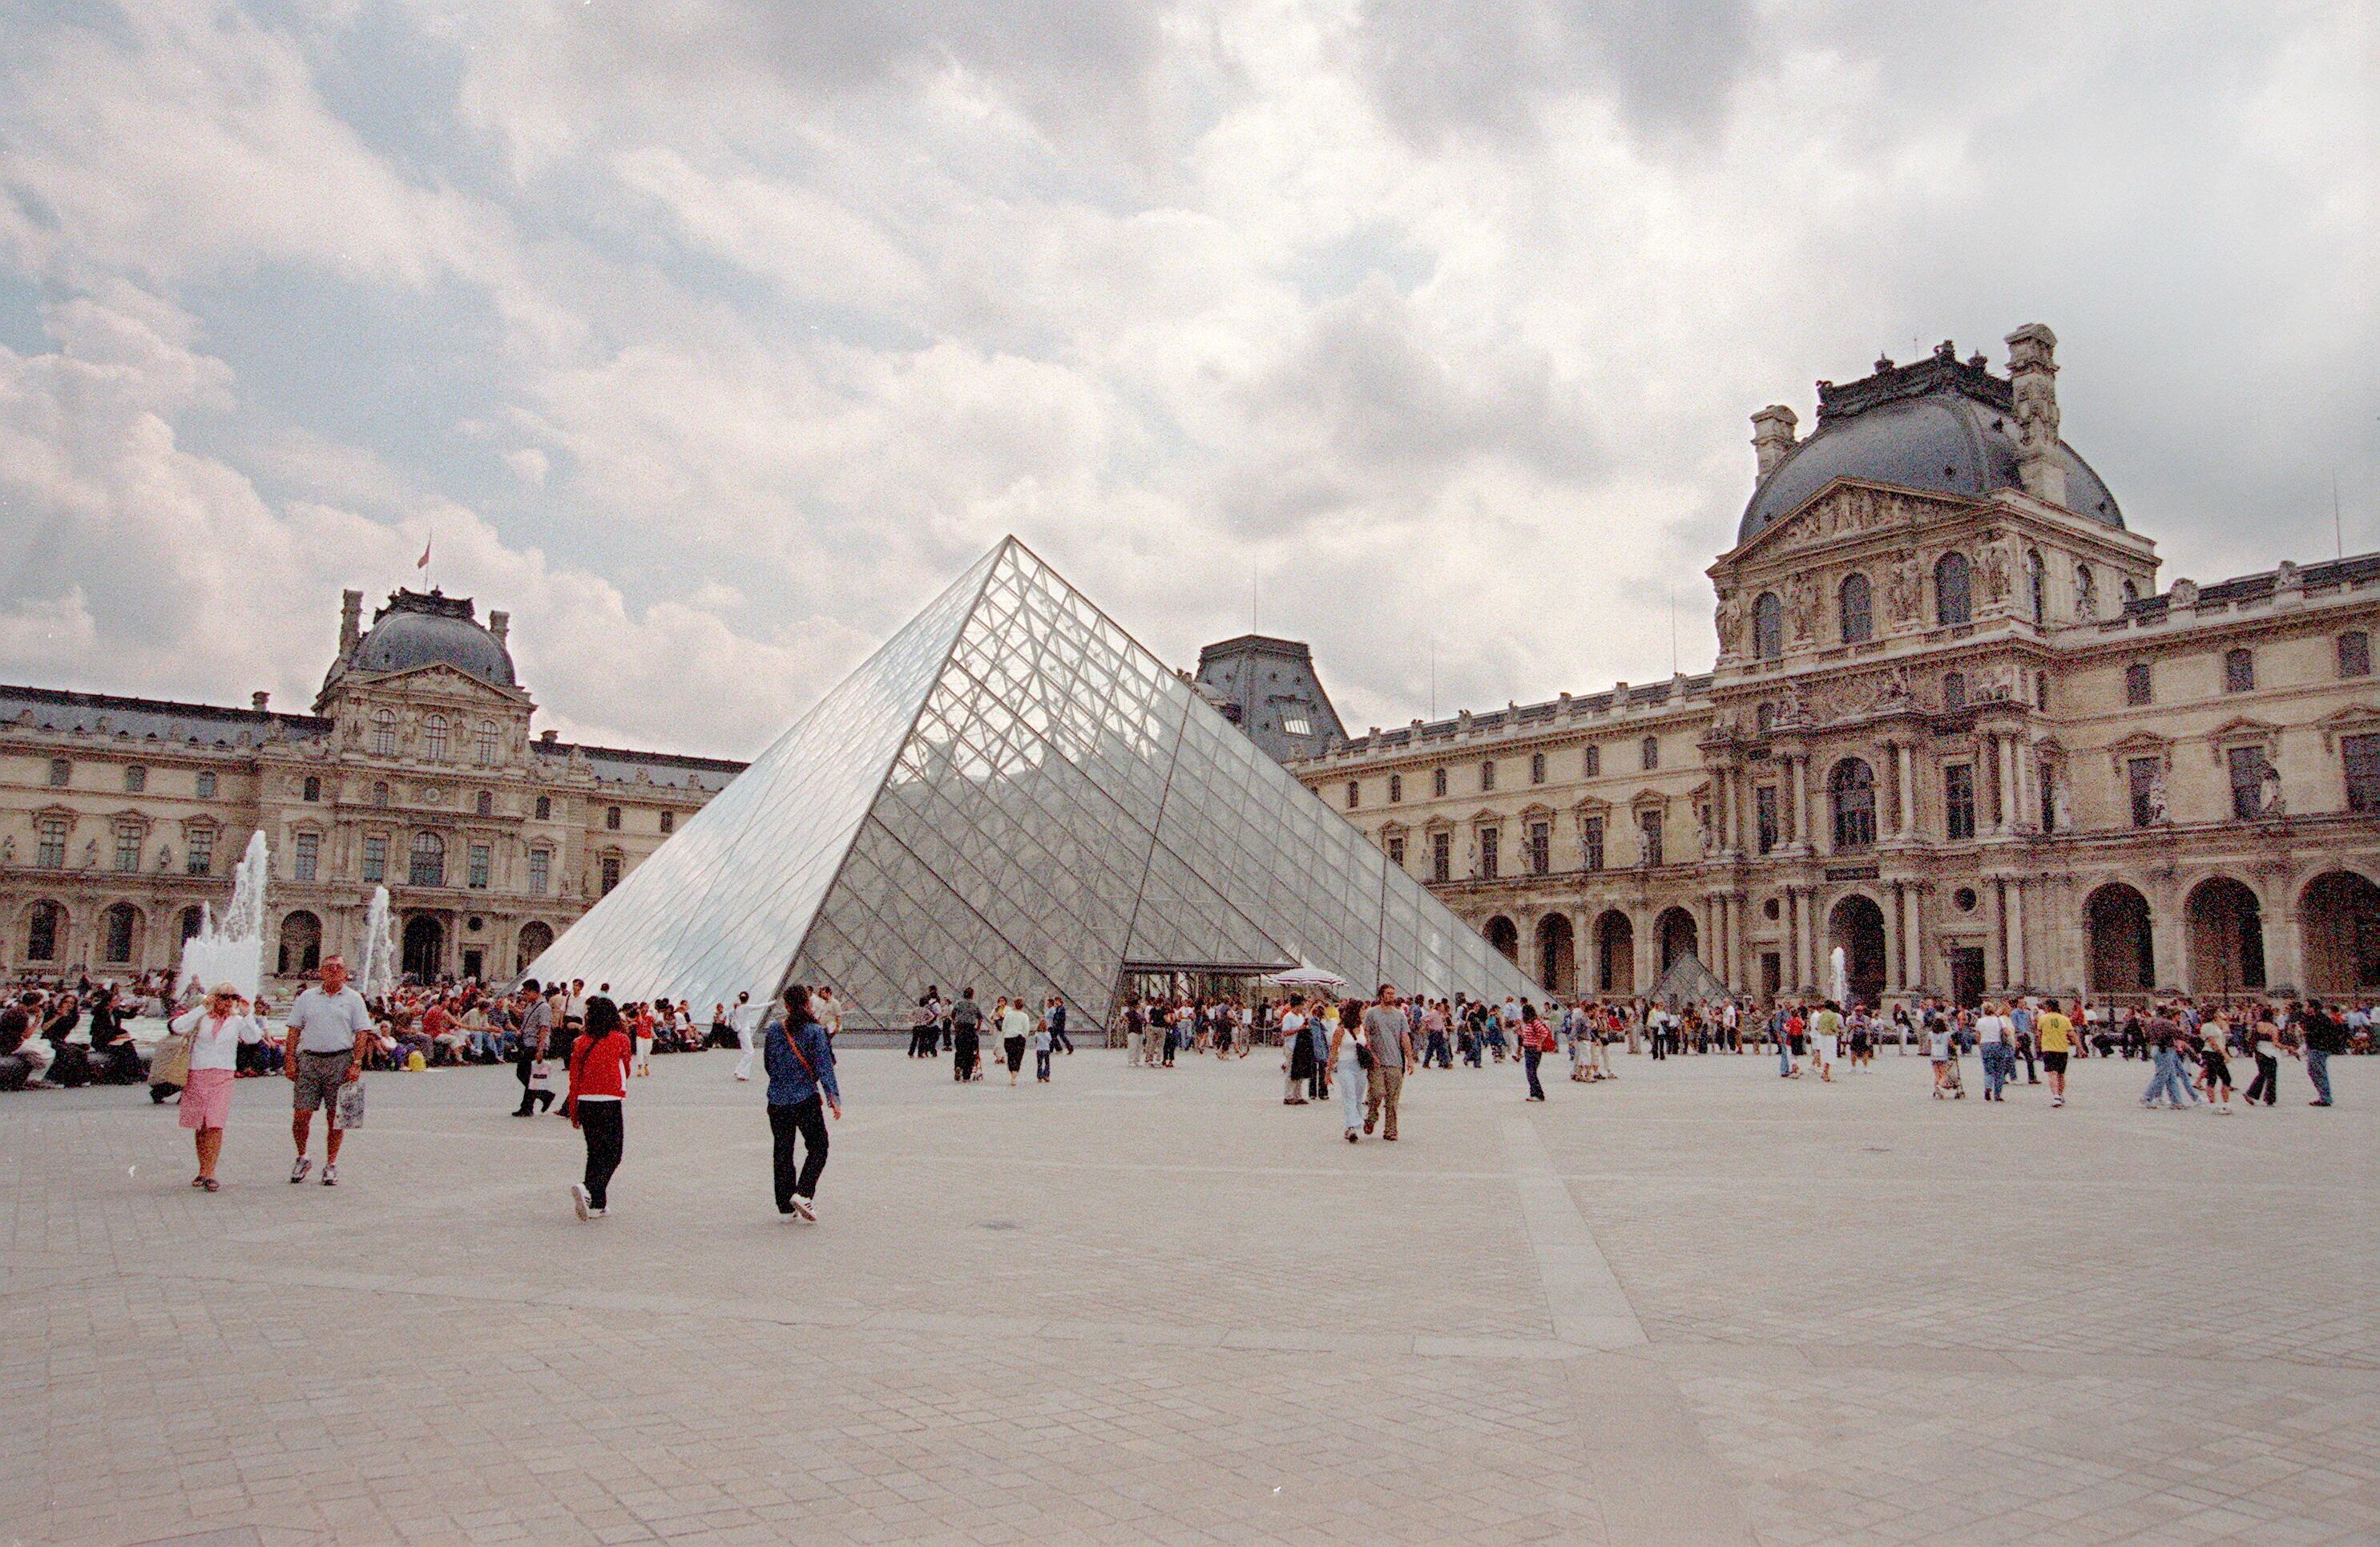 Imagen de archivo de una vista general del museo del Louvre con la pirámide de cristal, en París. EFE/JAVIER LIZON
